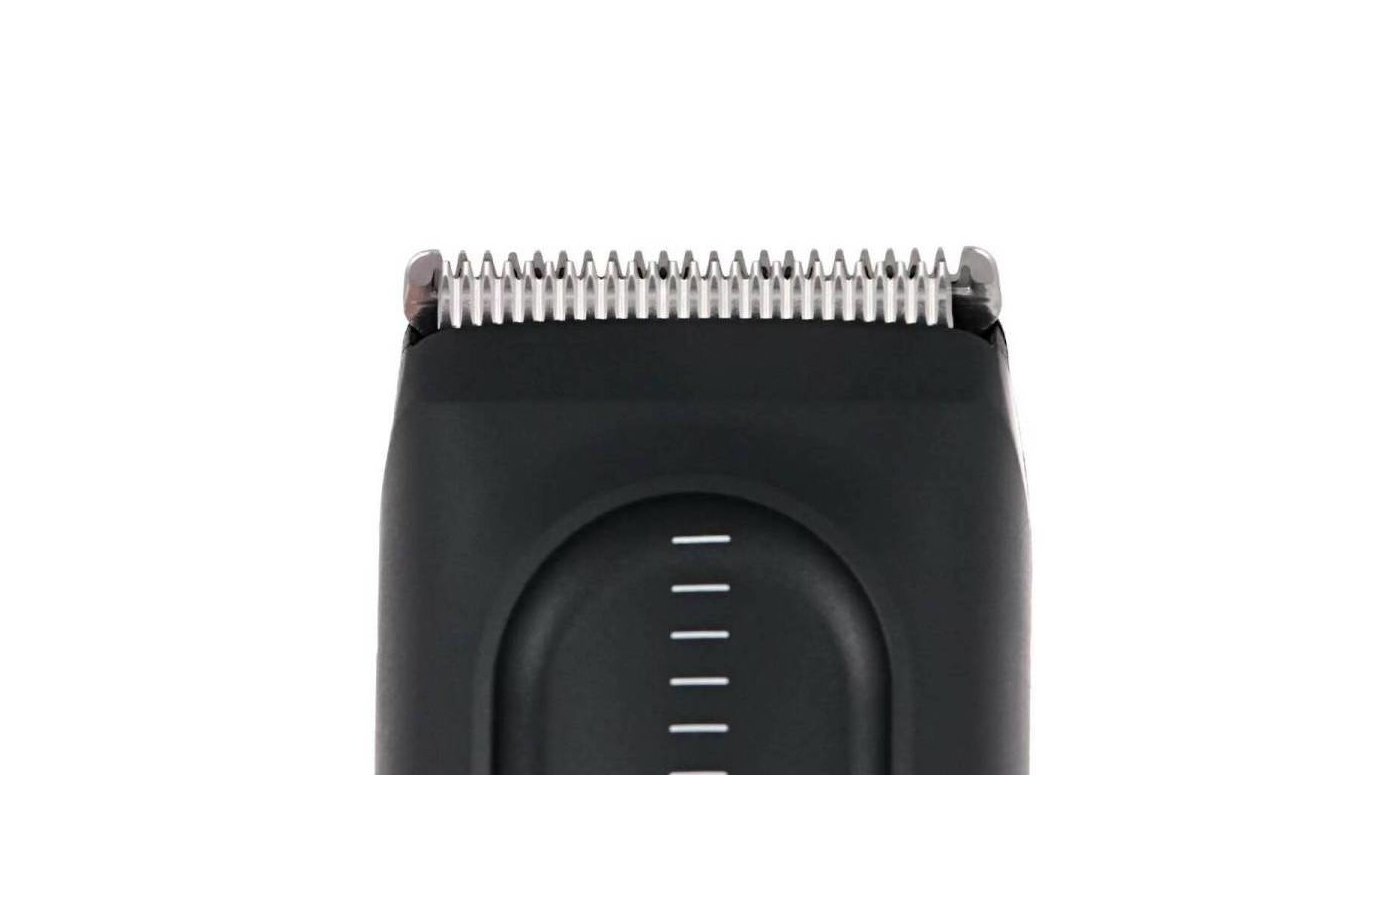 Машинка для стрижки волос braun hc 5010 характеристики